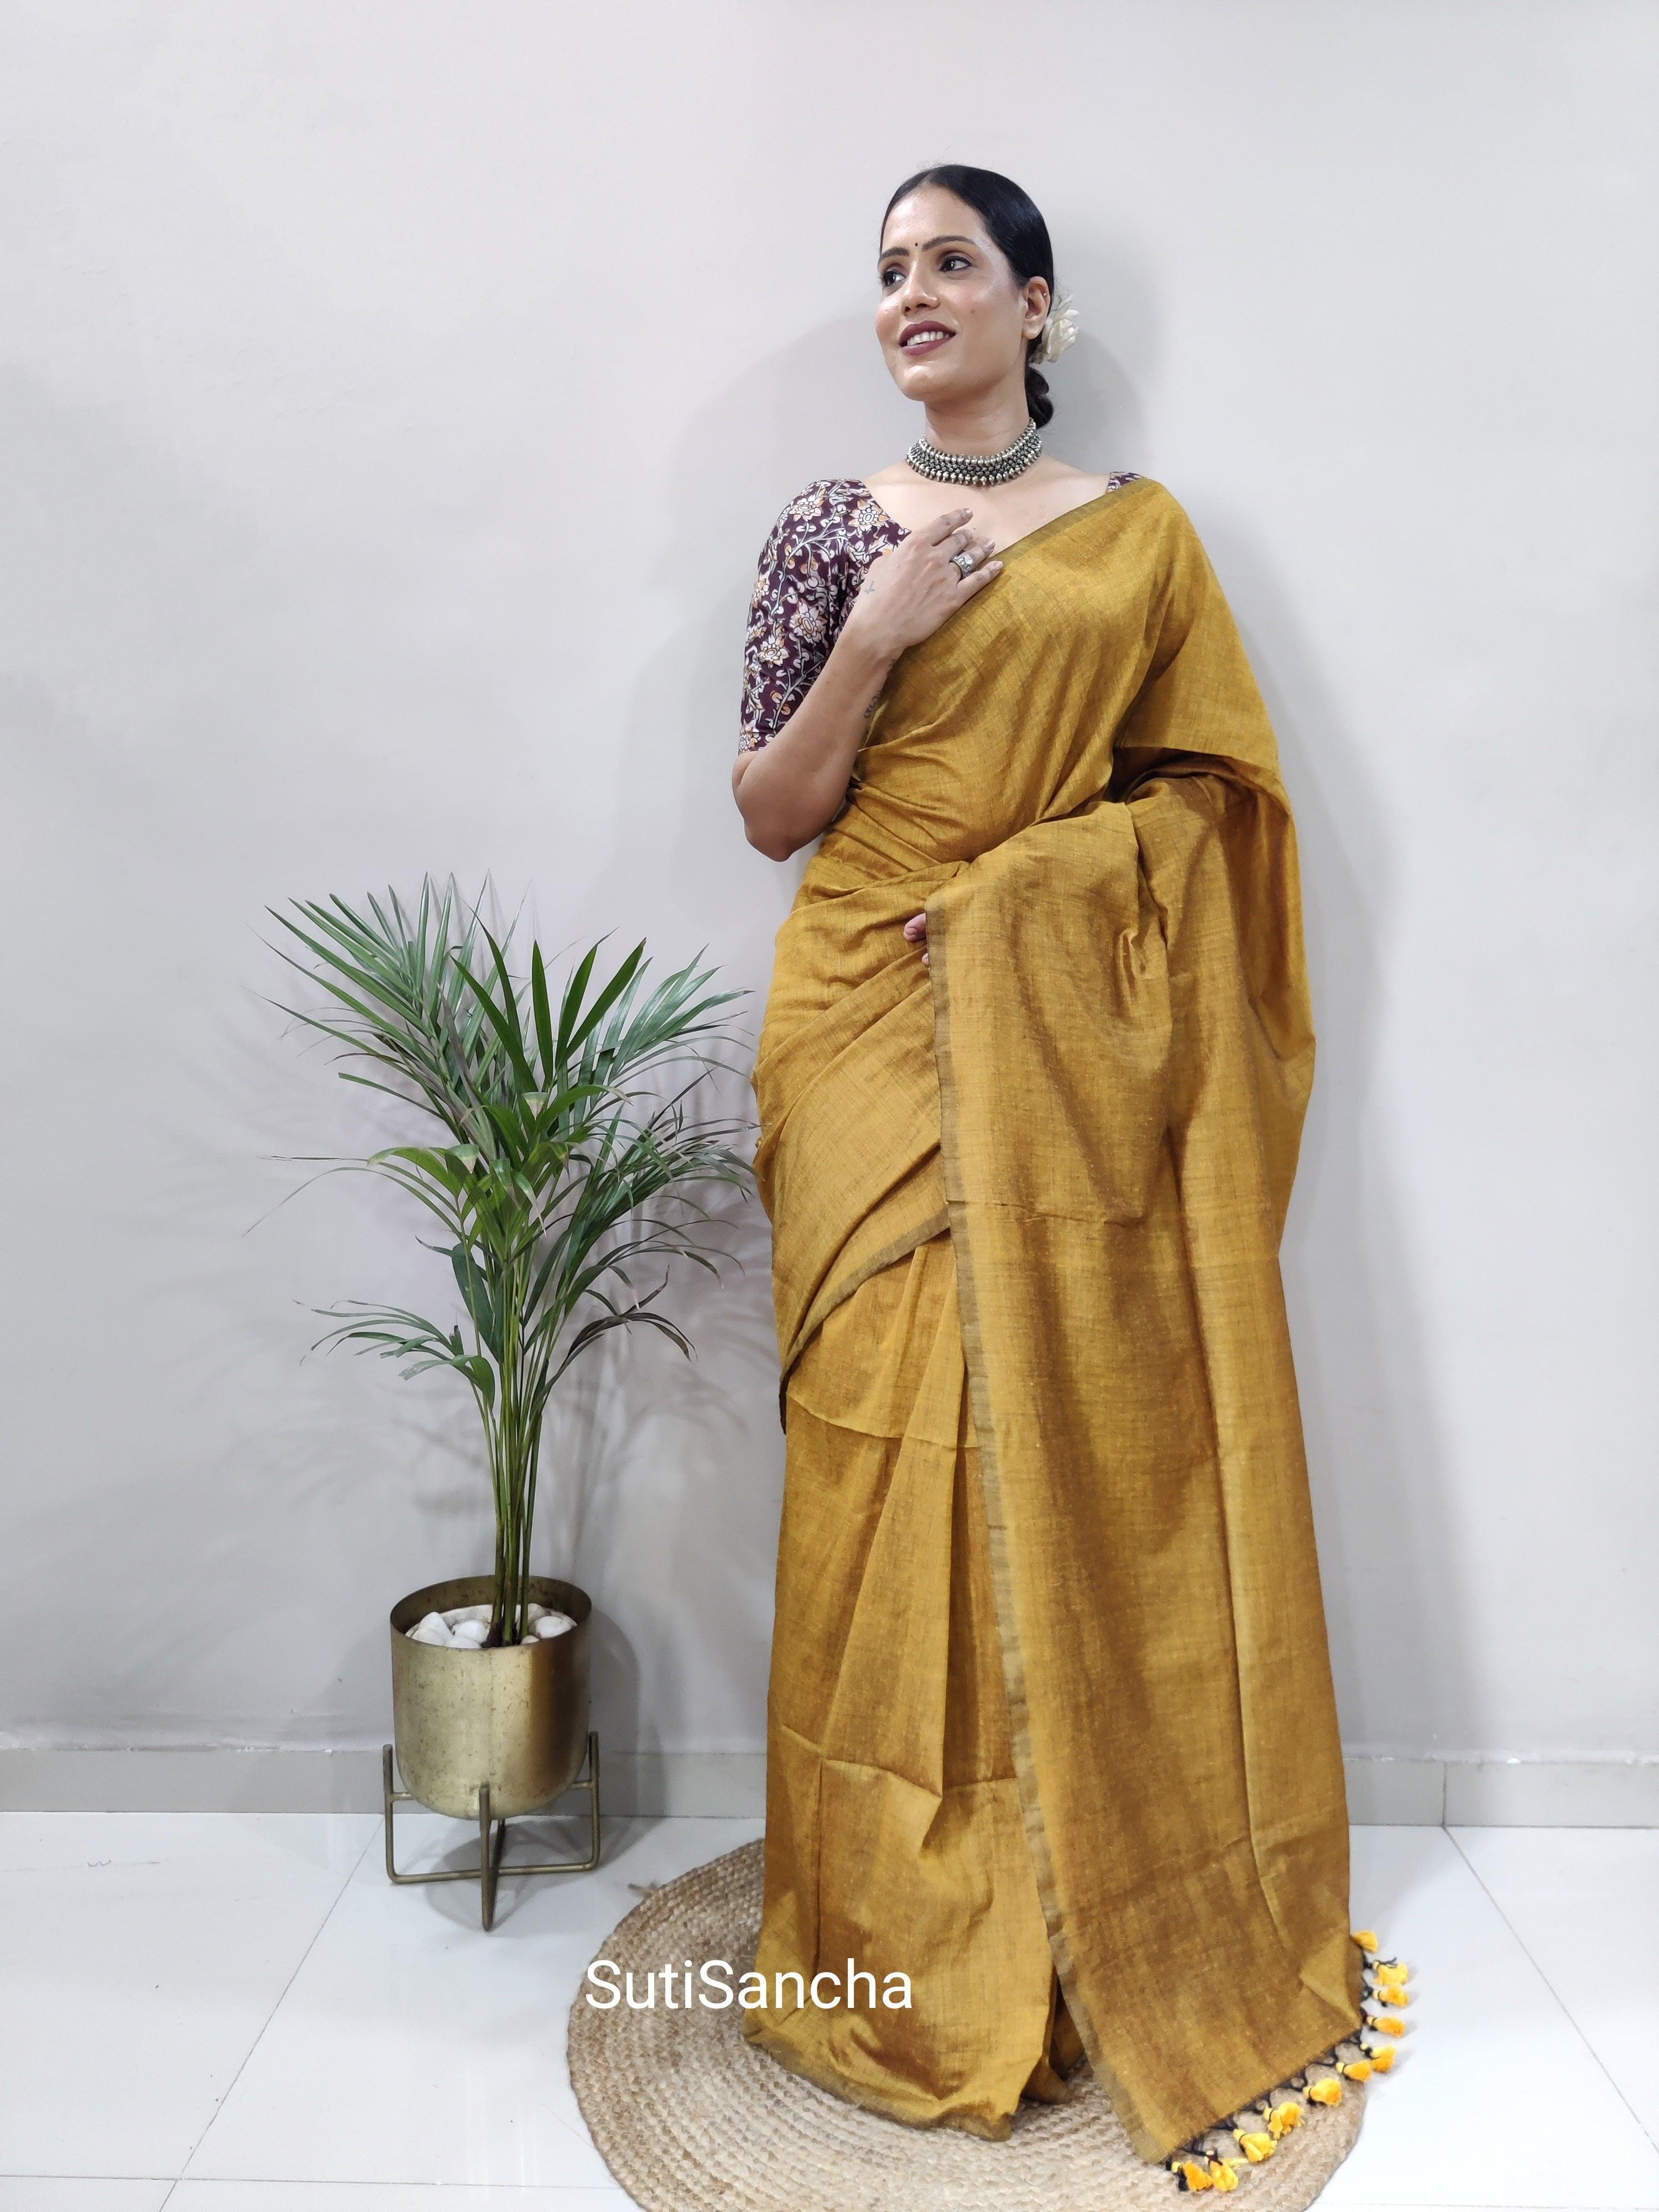 Sutisancha Musterd Khadi Saree & designer Blouse - Suti Sancha